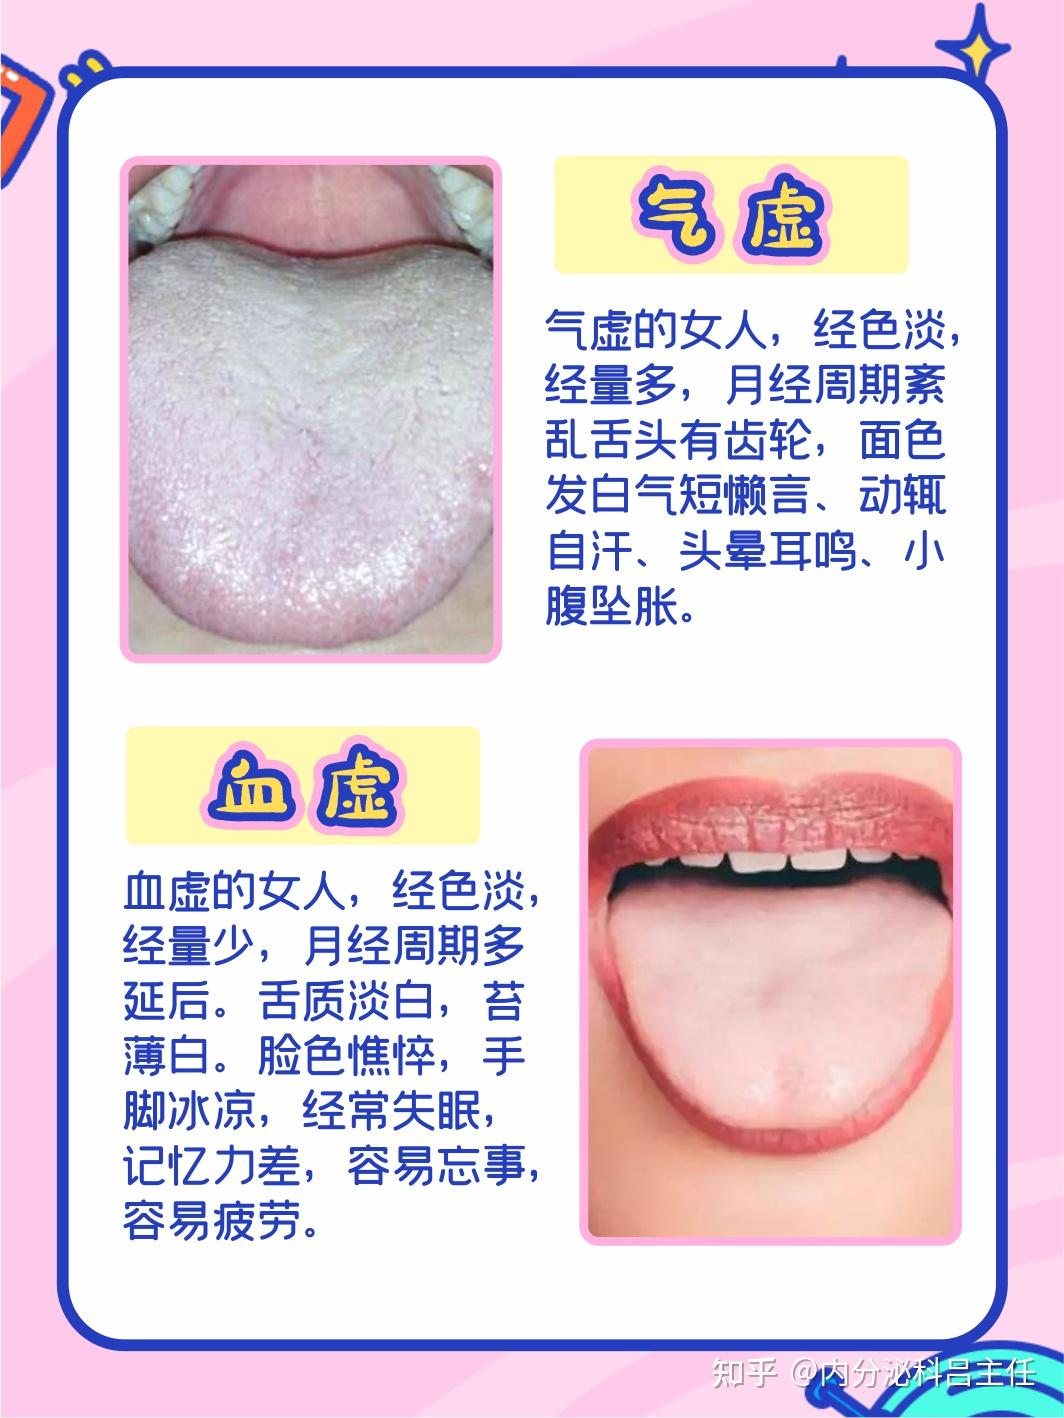 肝气郁结:一般人的舌头是椭圆,而肝气郁结的人舌头是尖的,舌尖和舌边